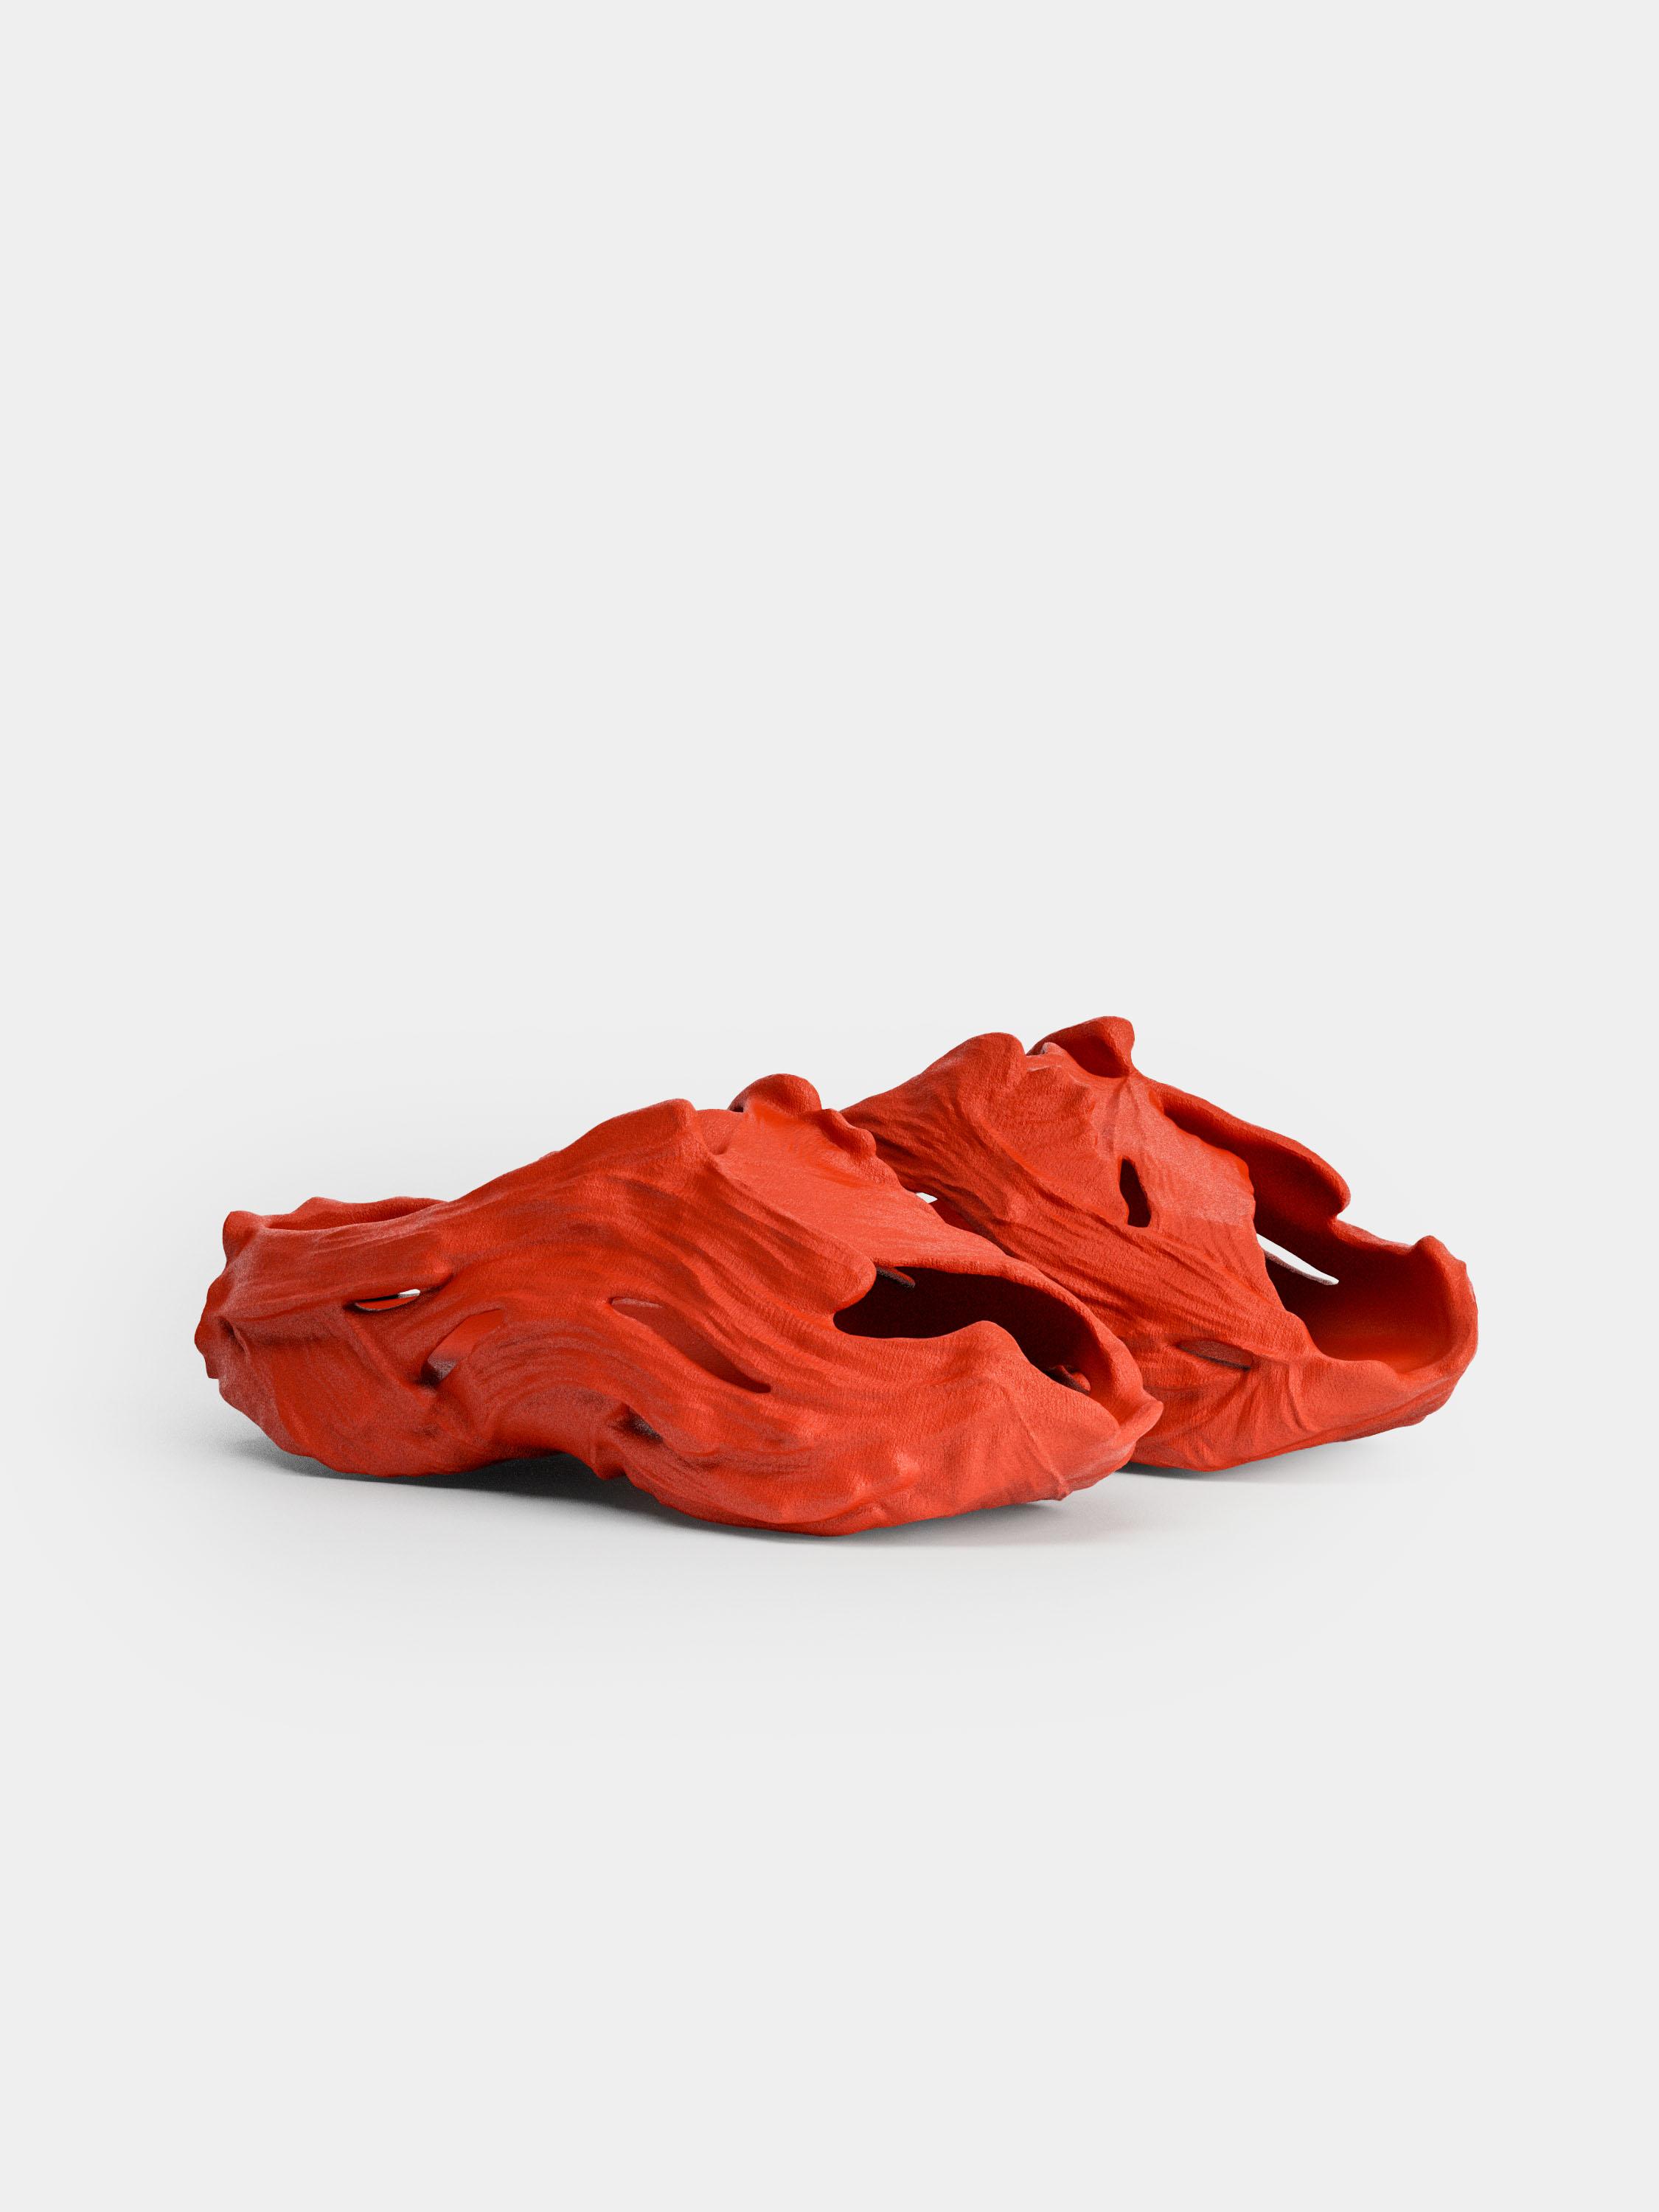 Odysseus sandal shoe | Embodied ideas collection 3d model